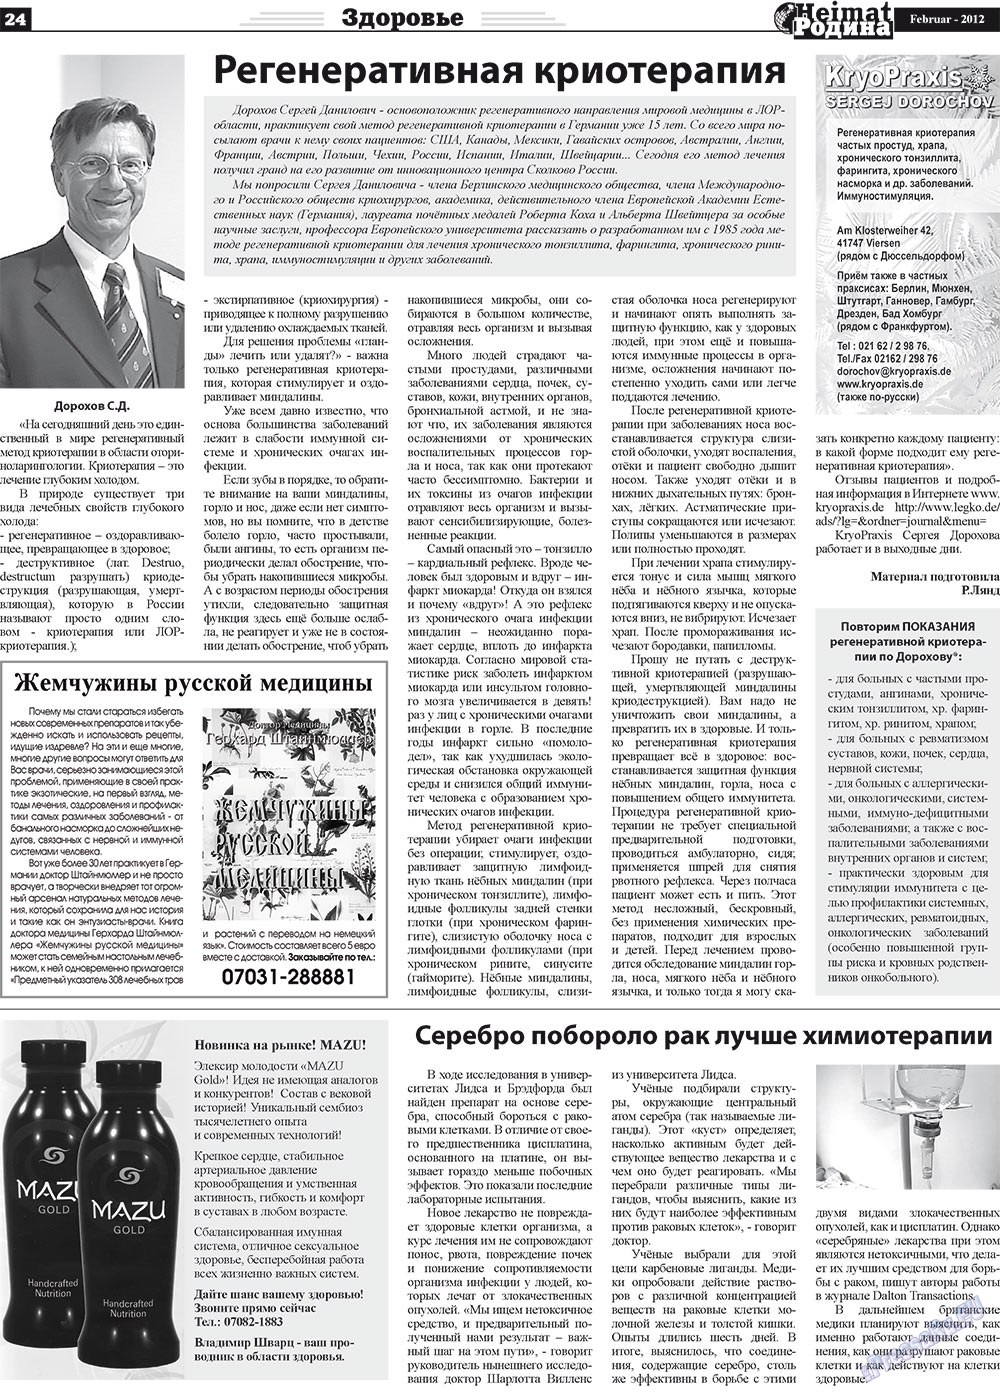 Heimat-Родина (газета). 2012 год, номер 2, стр. 24